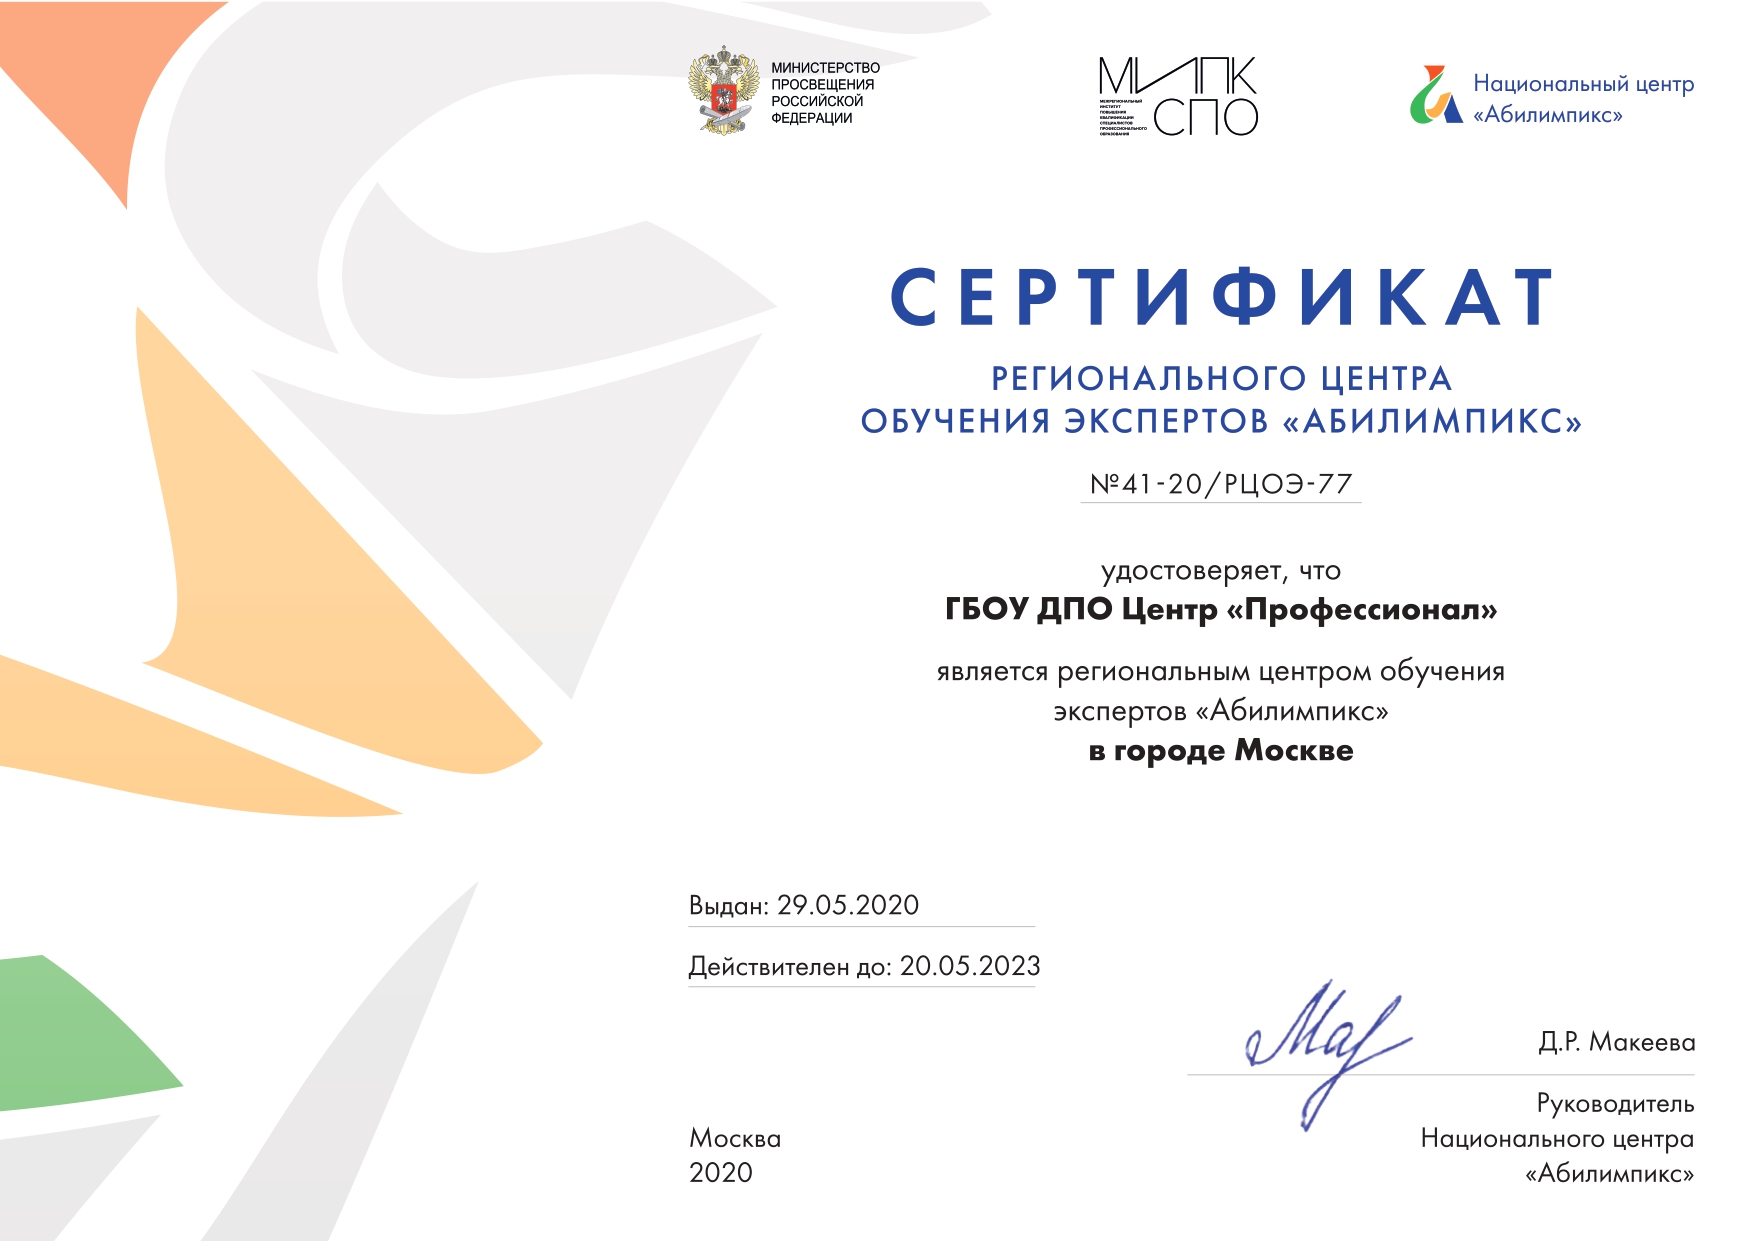 Сертификат регионального центра обучения экспертов «Абилимпикс» 